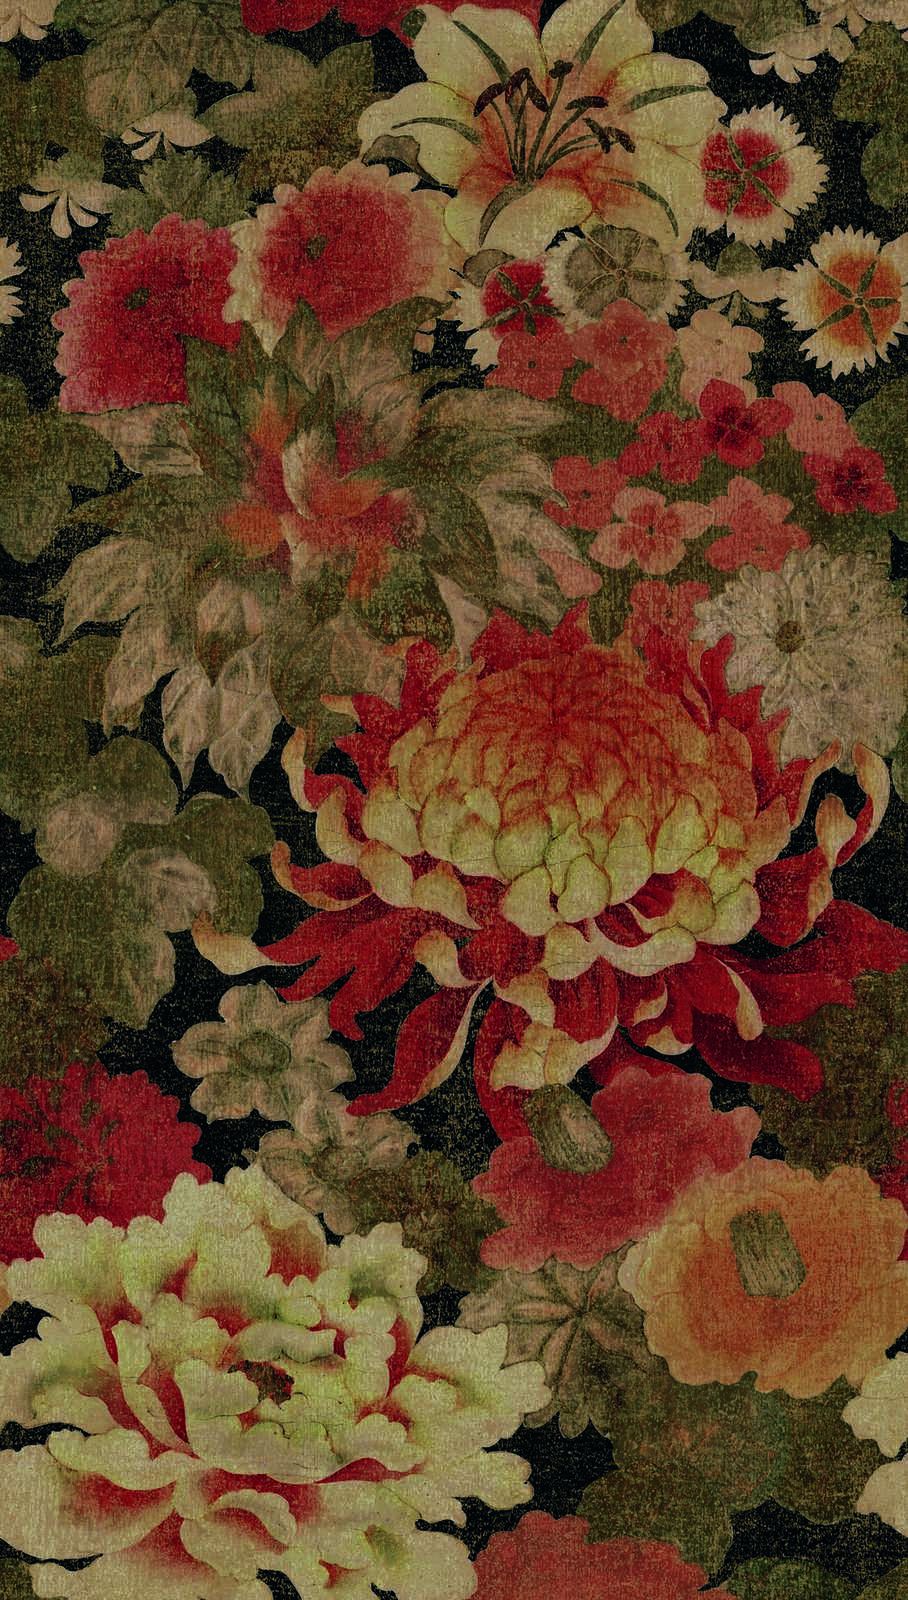             Papel pintado no tejido con gran motivo floral - beige, rojo, verde
        